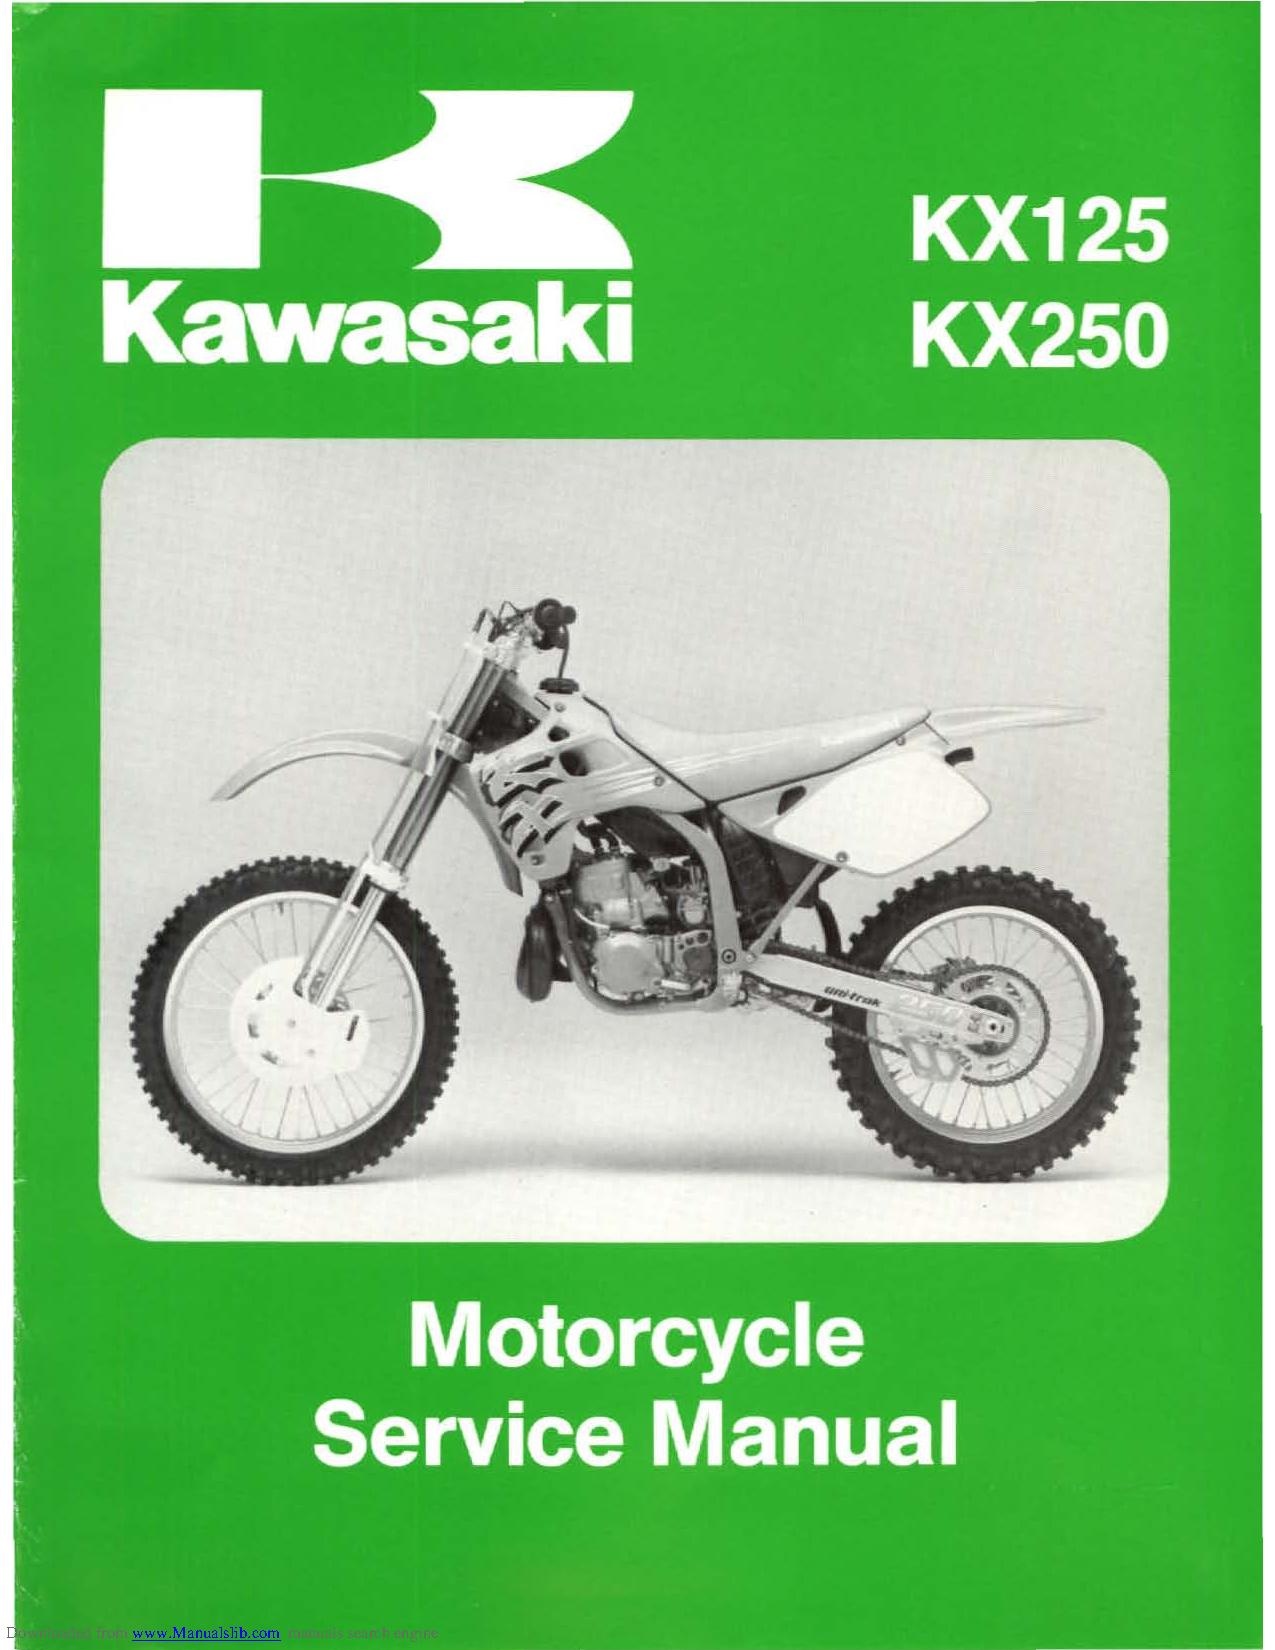 FileKawasaki KX250 J 19921993 Service Manual.pdf CycleChaos